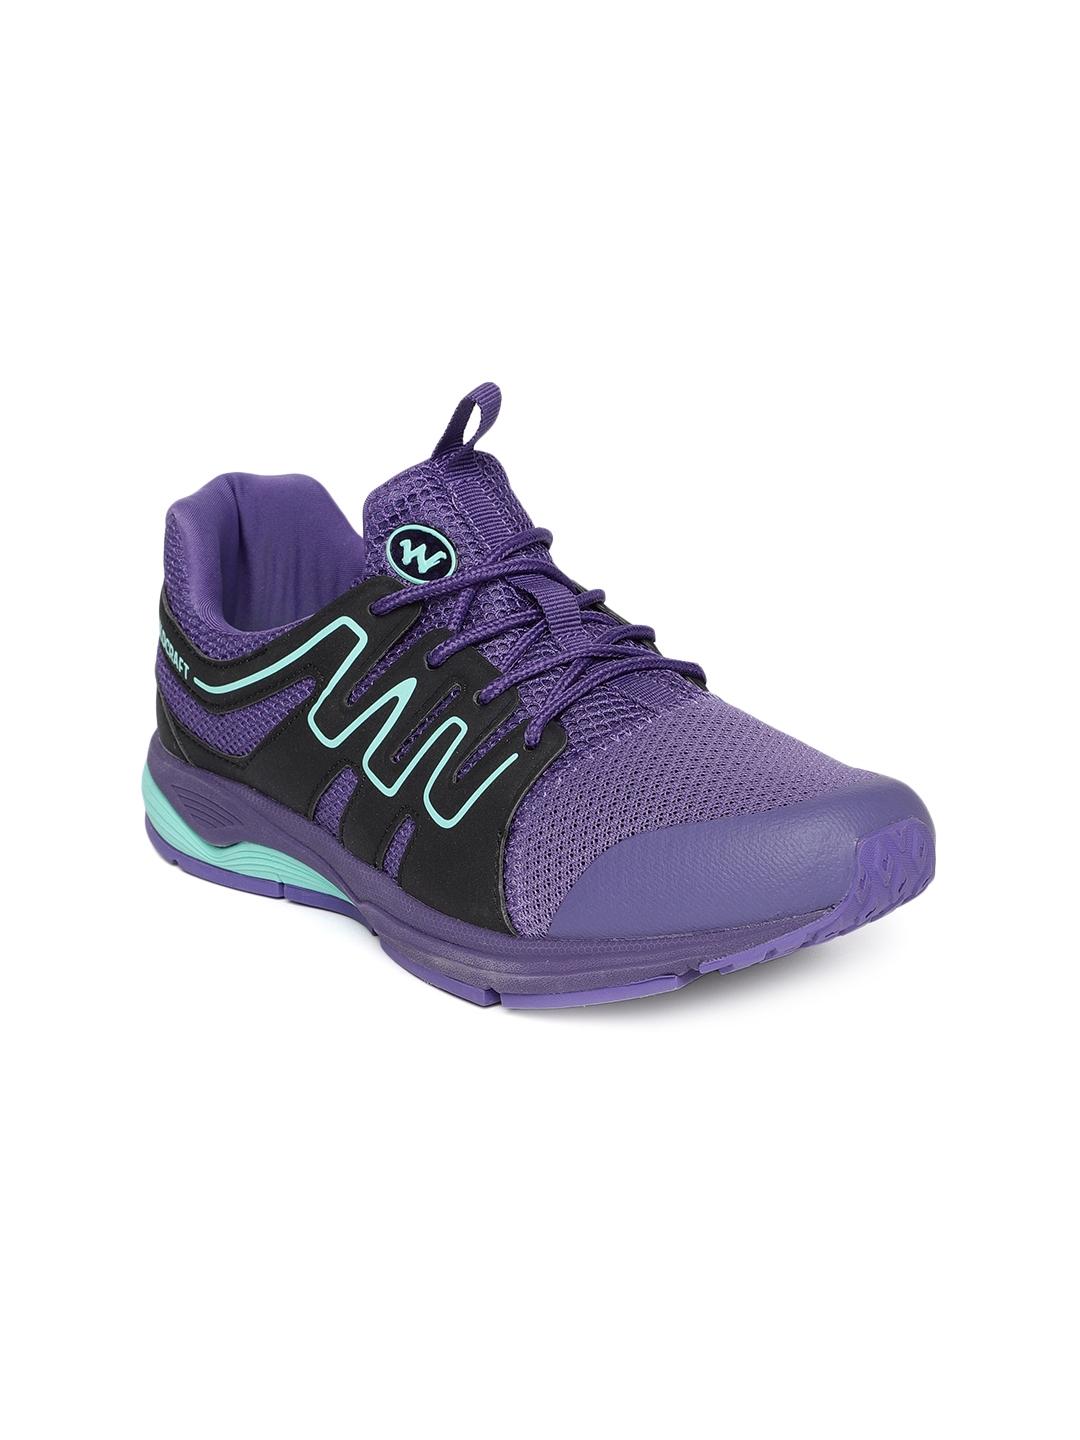 Buy Wildcraft Women Purple Avic Trekking Shoes - Casual Shoes for Women ...